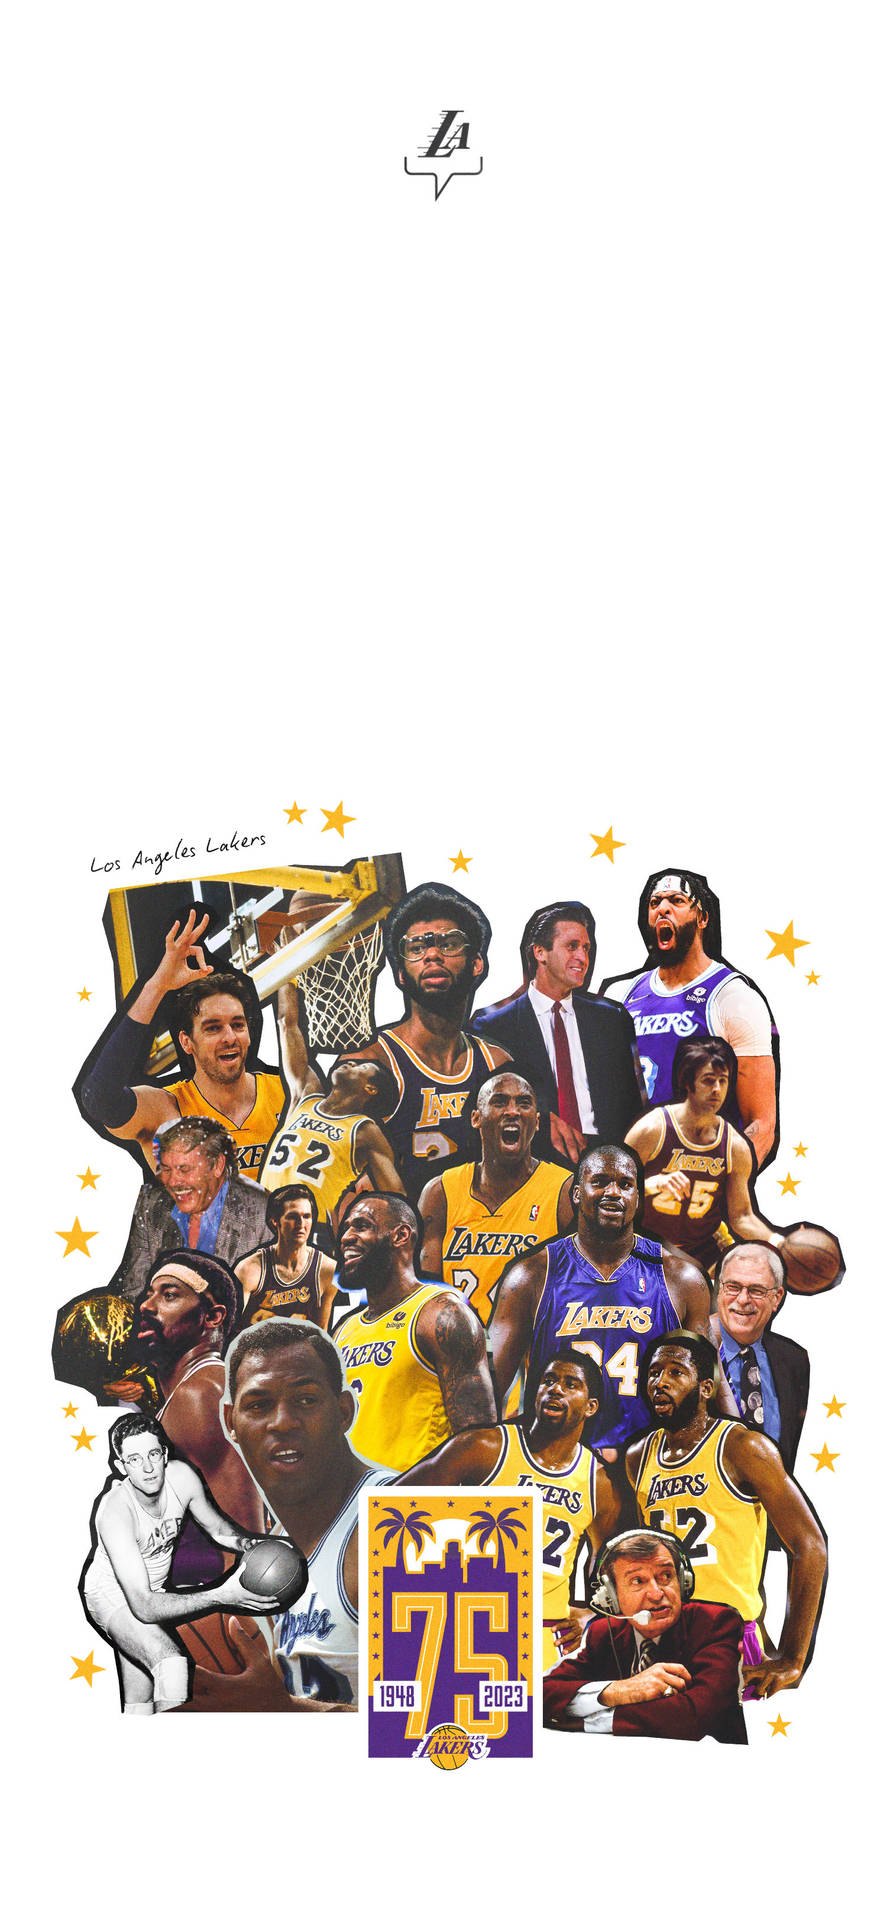 Vis din Lakers-stolthed med et personligt Lakers iPhone-baggrundsbillede. Wallpaper